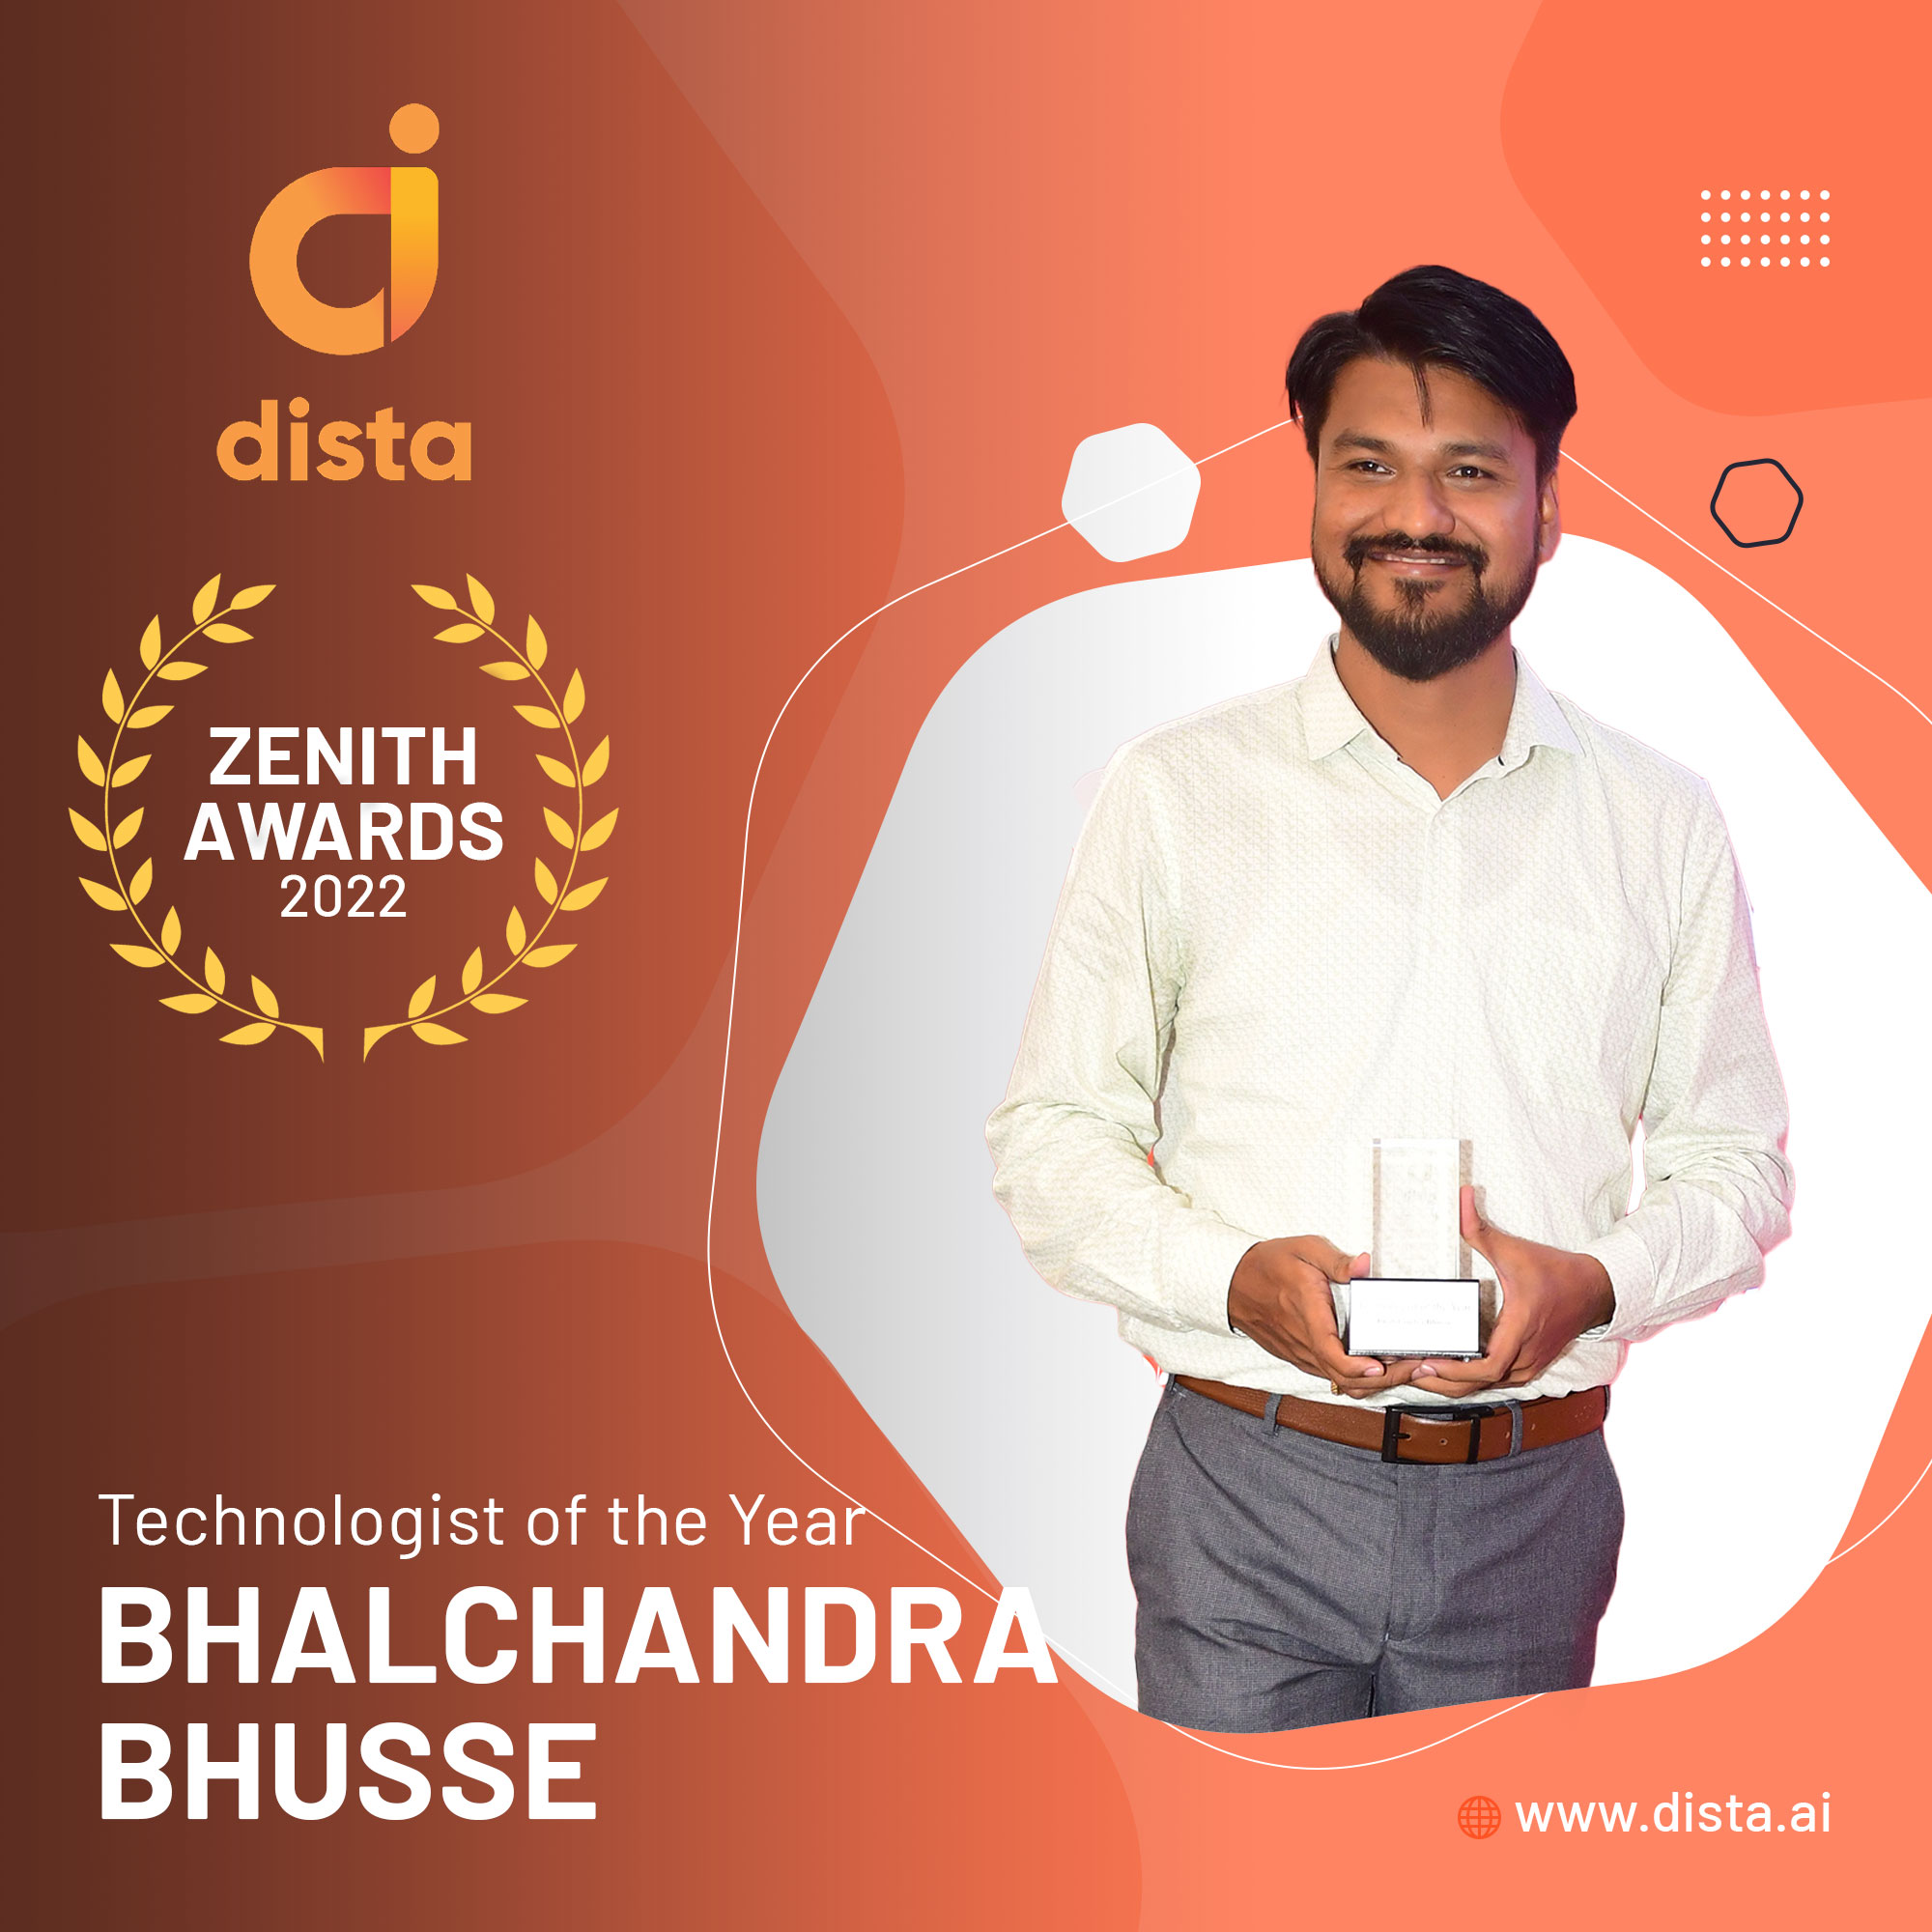 Bhalchandra Bhusse - Dista Zenith Awards 2022